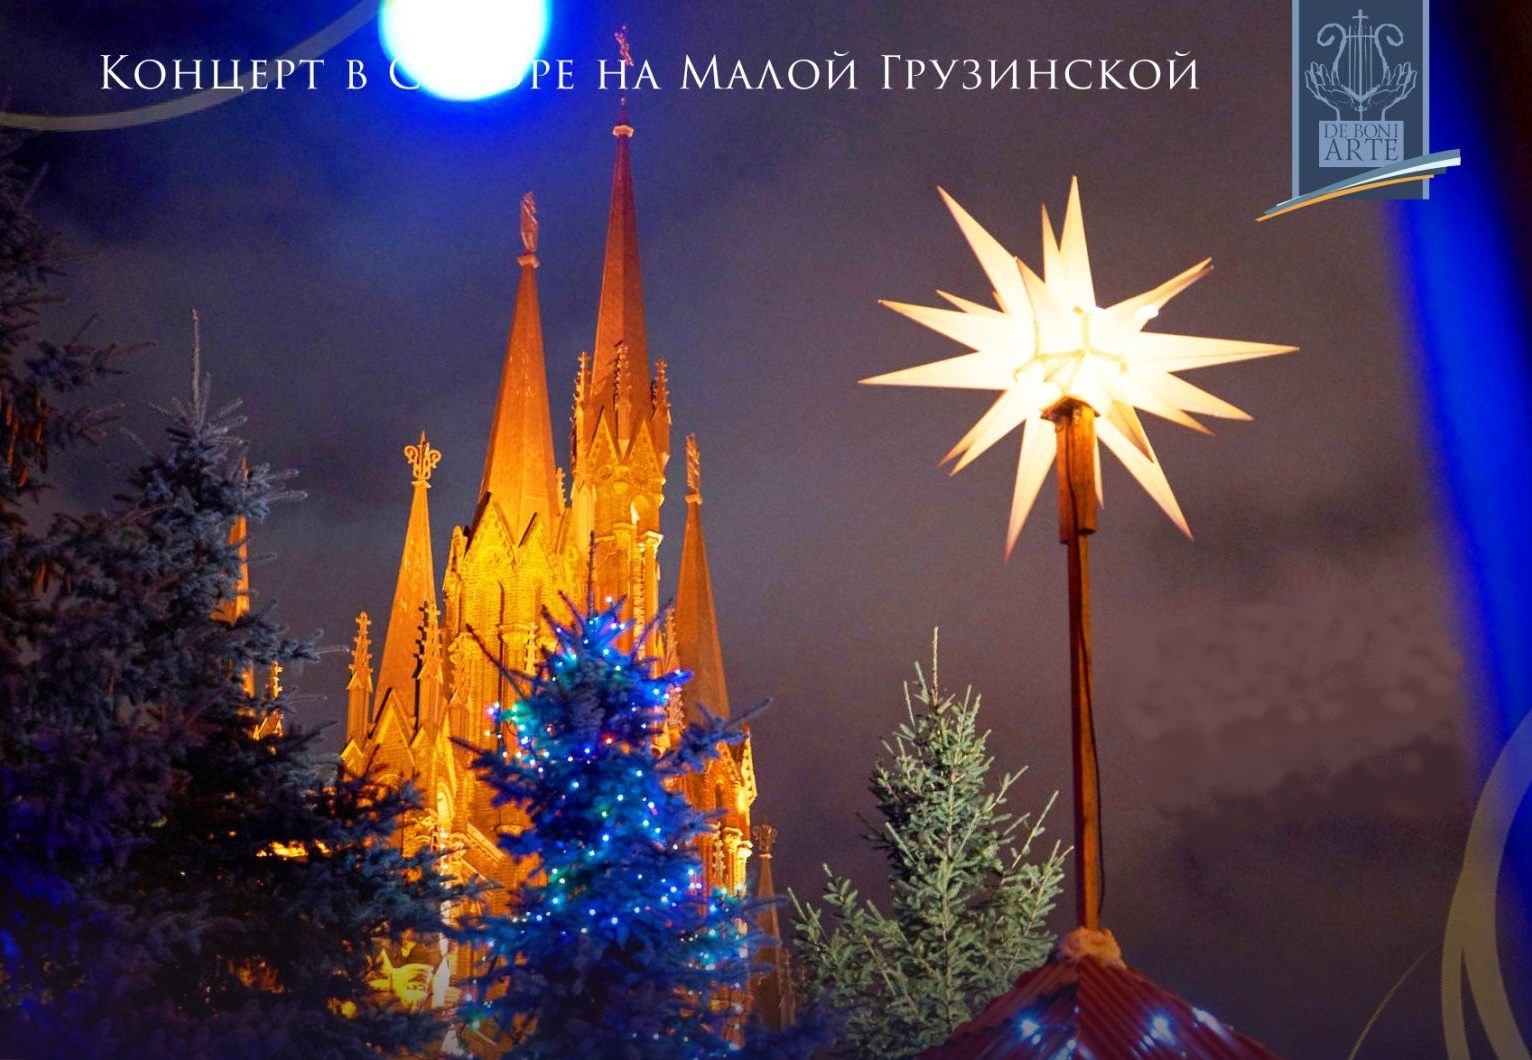 XI Рождественский фестиваль «Искусство добра» открылся в Москве